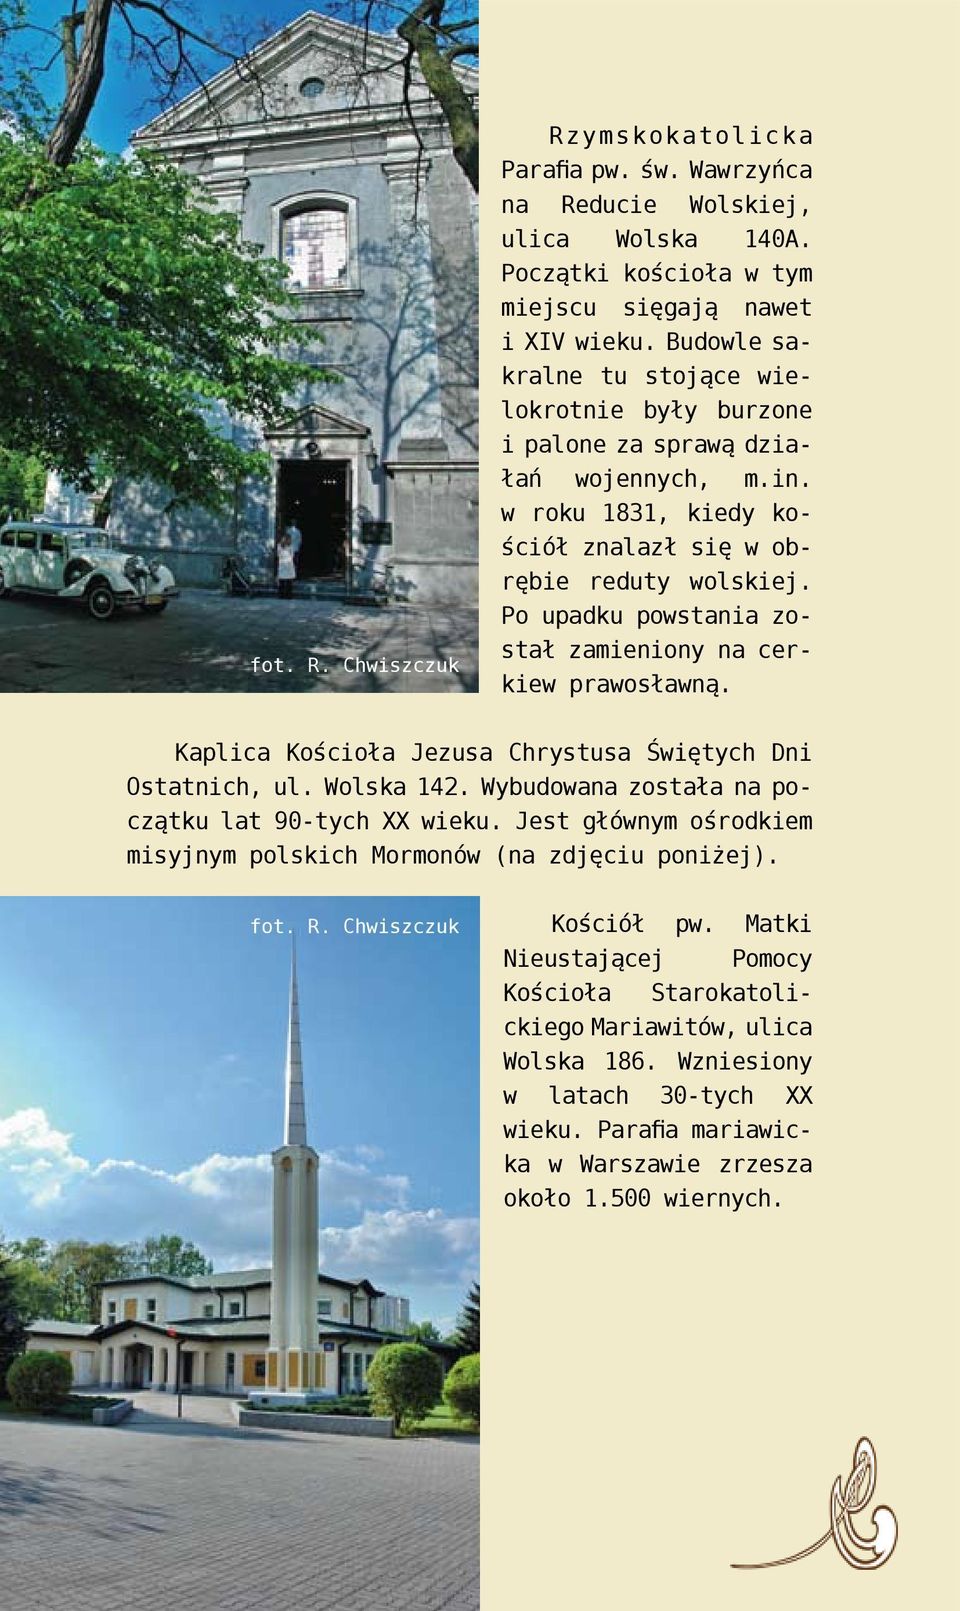 Po upadku powstania został zamieniony na cerkiew prawosławną. Kaplica Kościoła Jezusa Chrystusa Świętych Dni Ostatnich, ul. Wolska 142. Wybudowana została na początku lat 90-tych XX wieku.